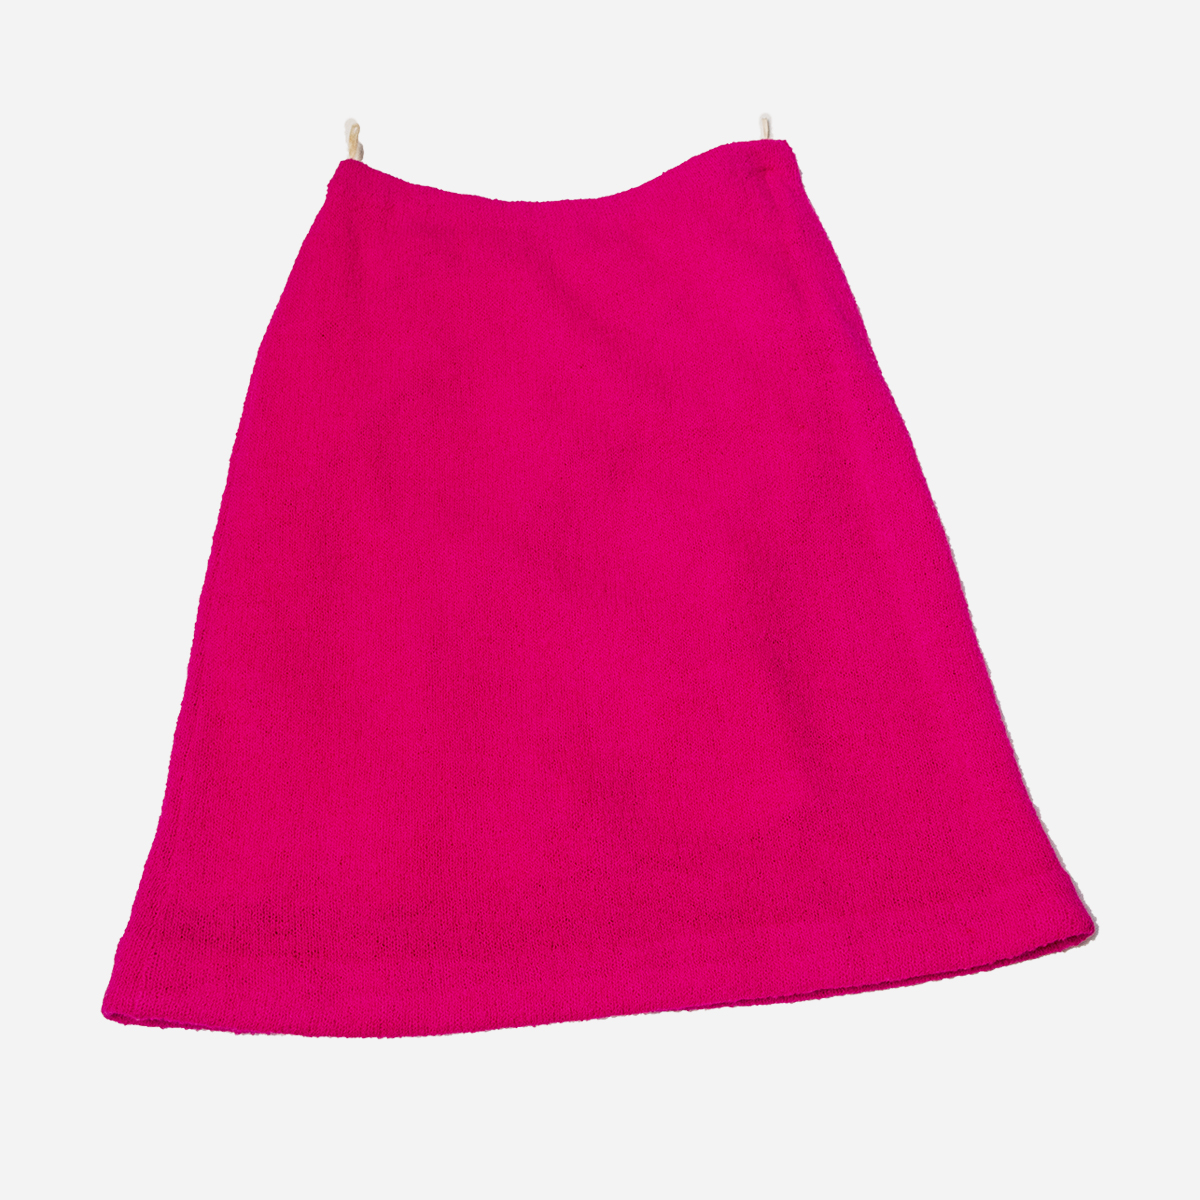 Pink Dalton knit Skirt